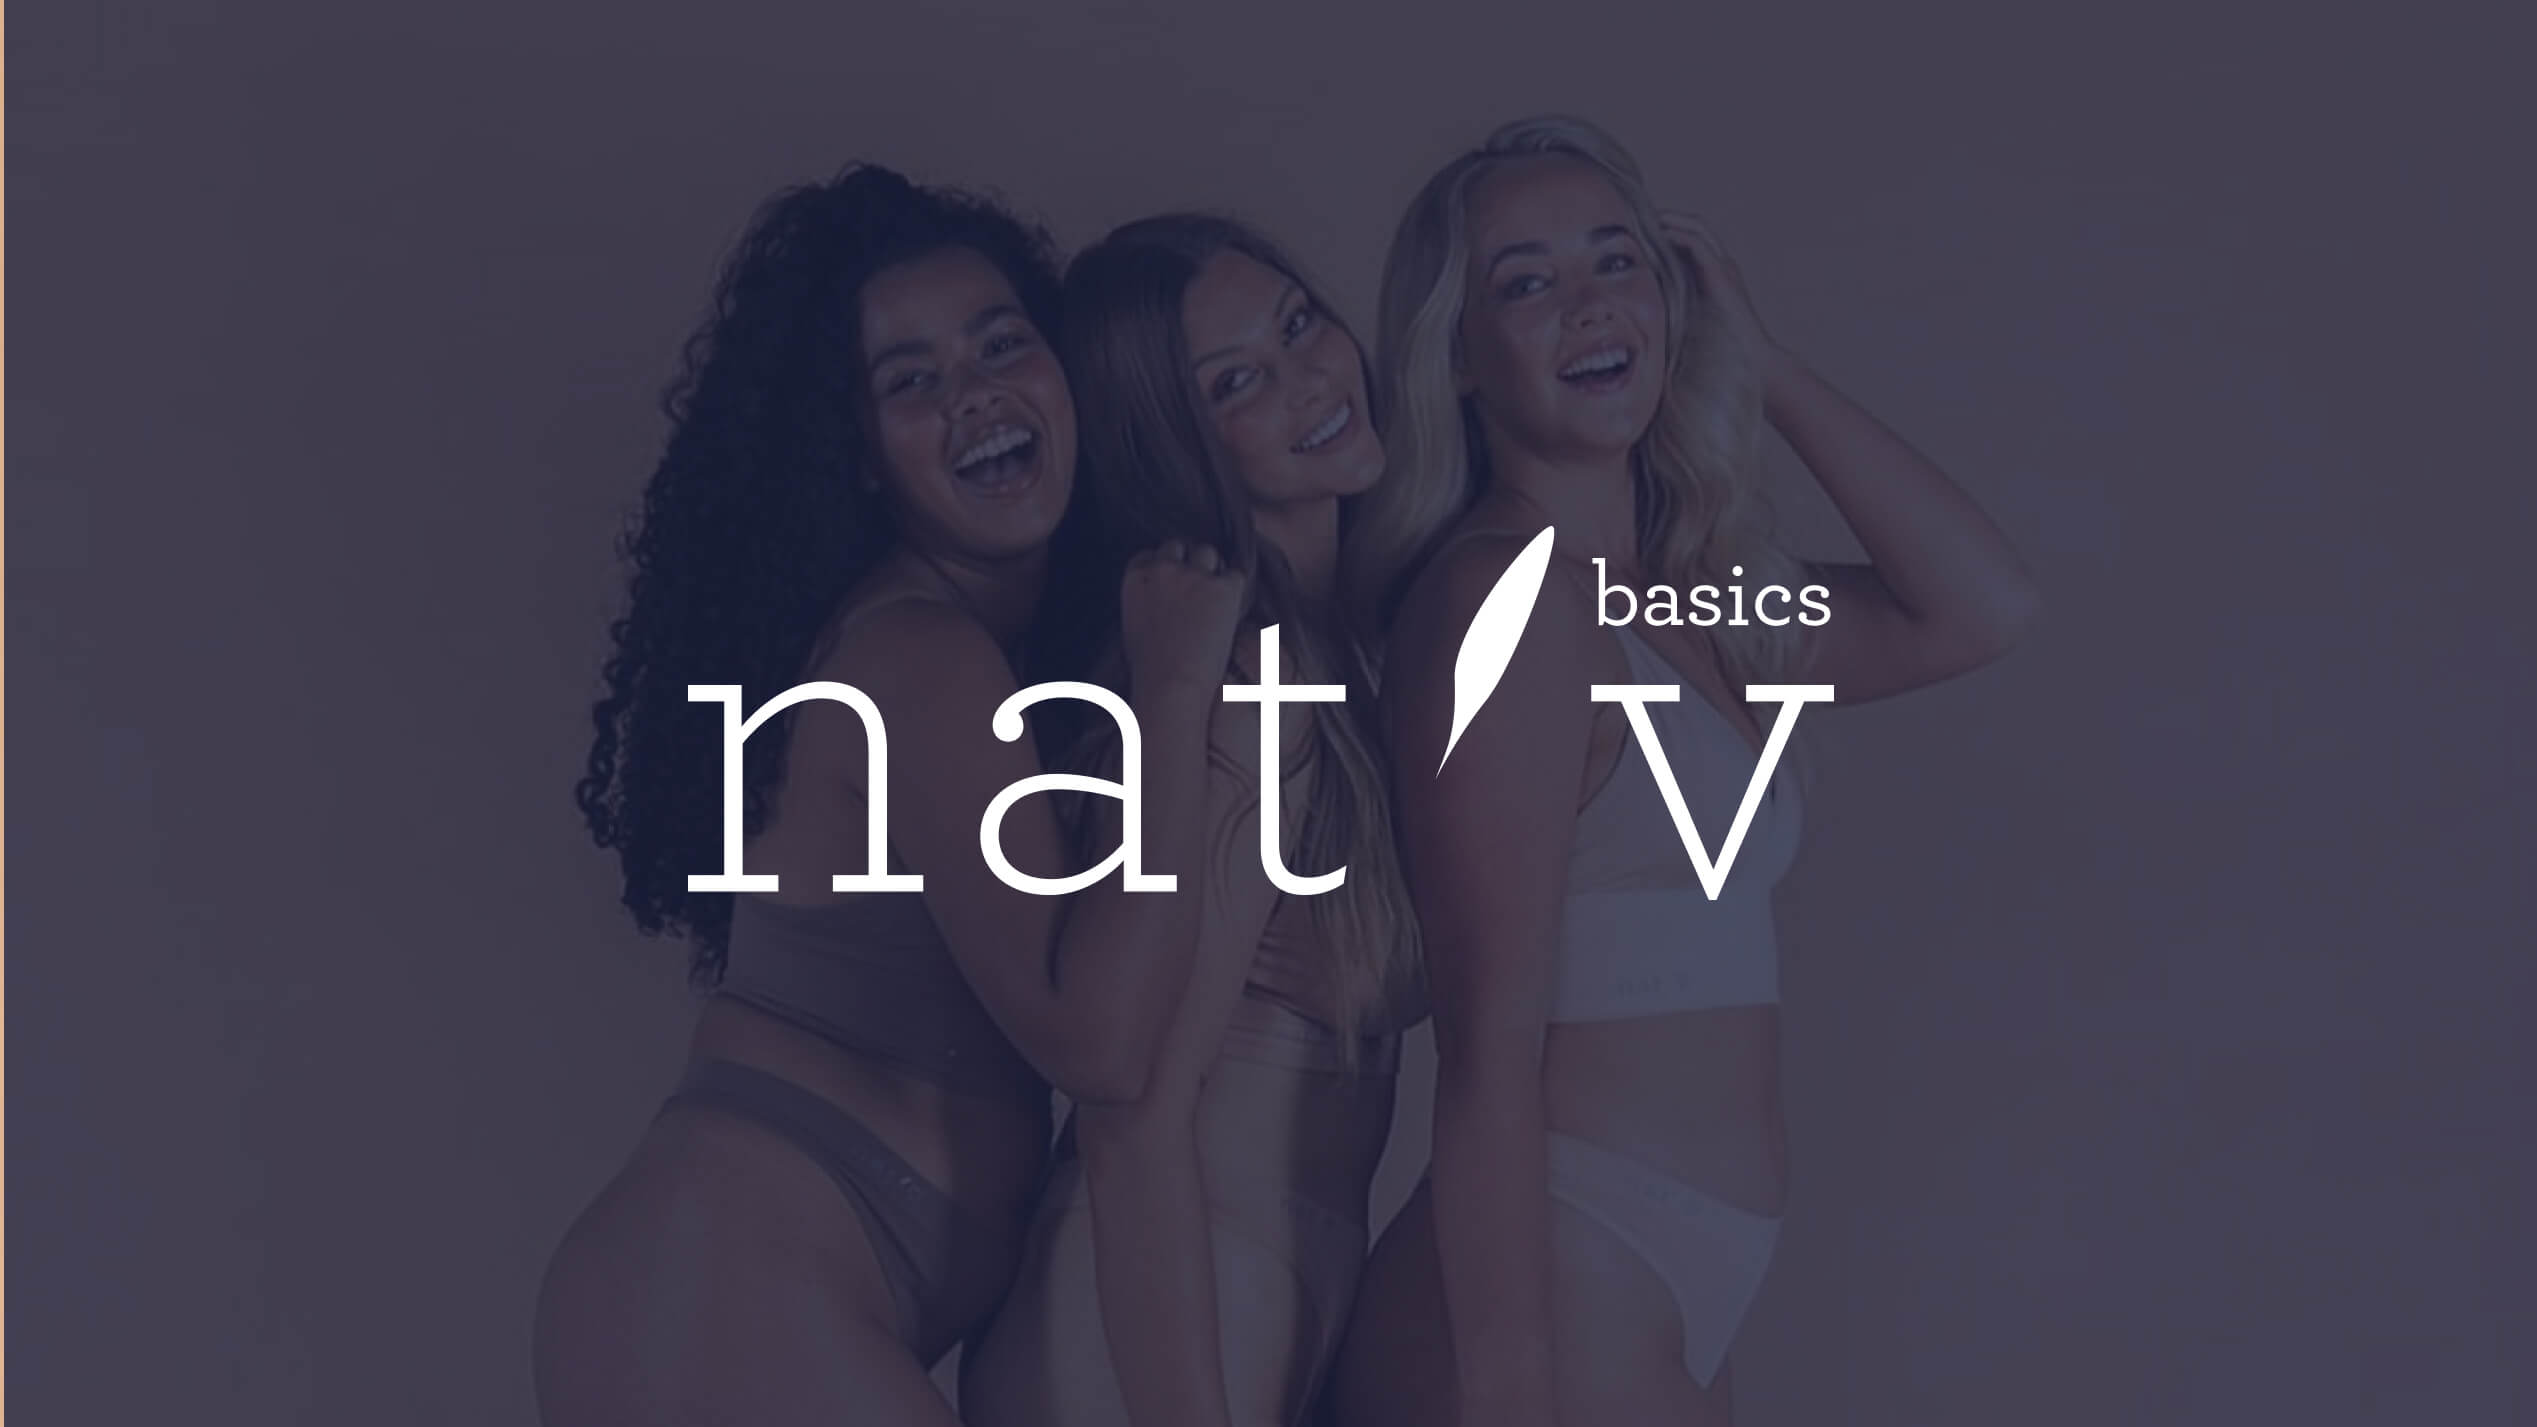 Underwear models smiling and posting behind the nat'v logo.